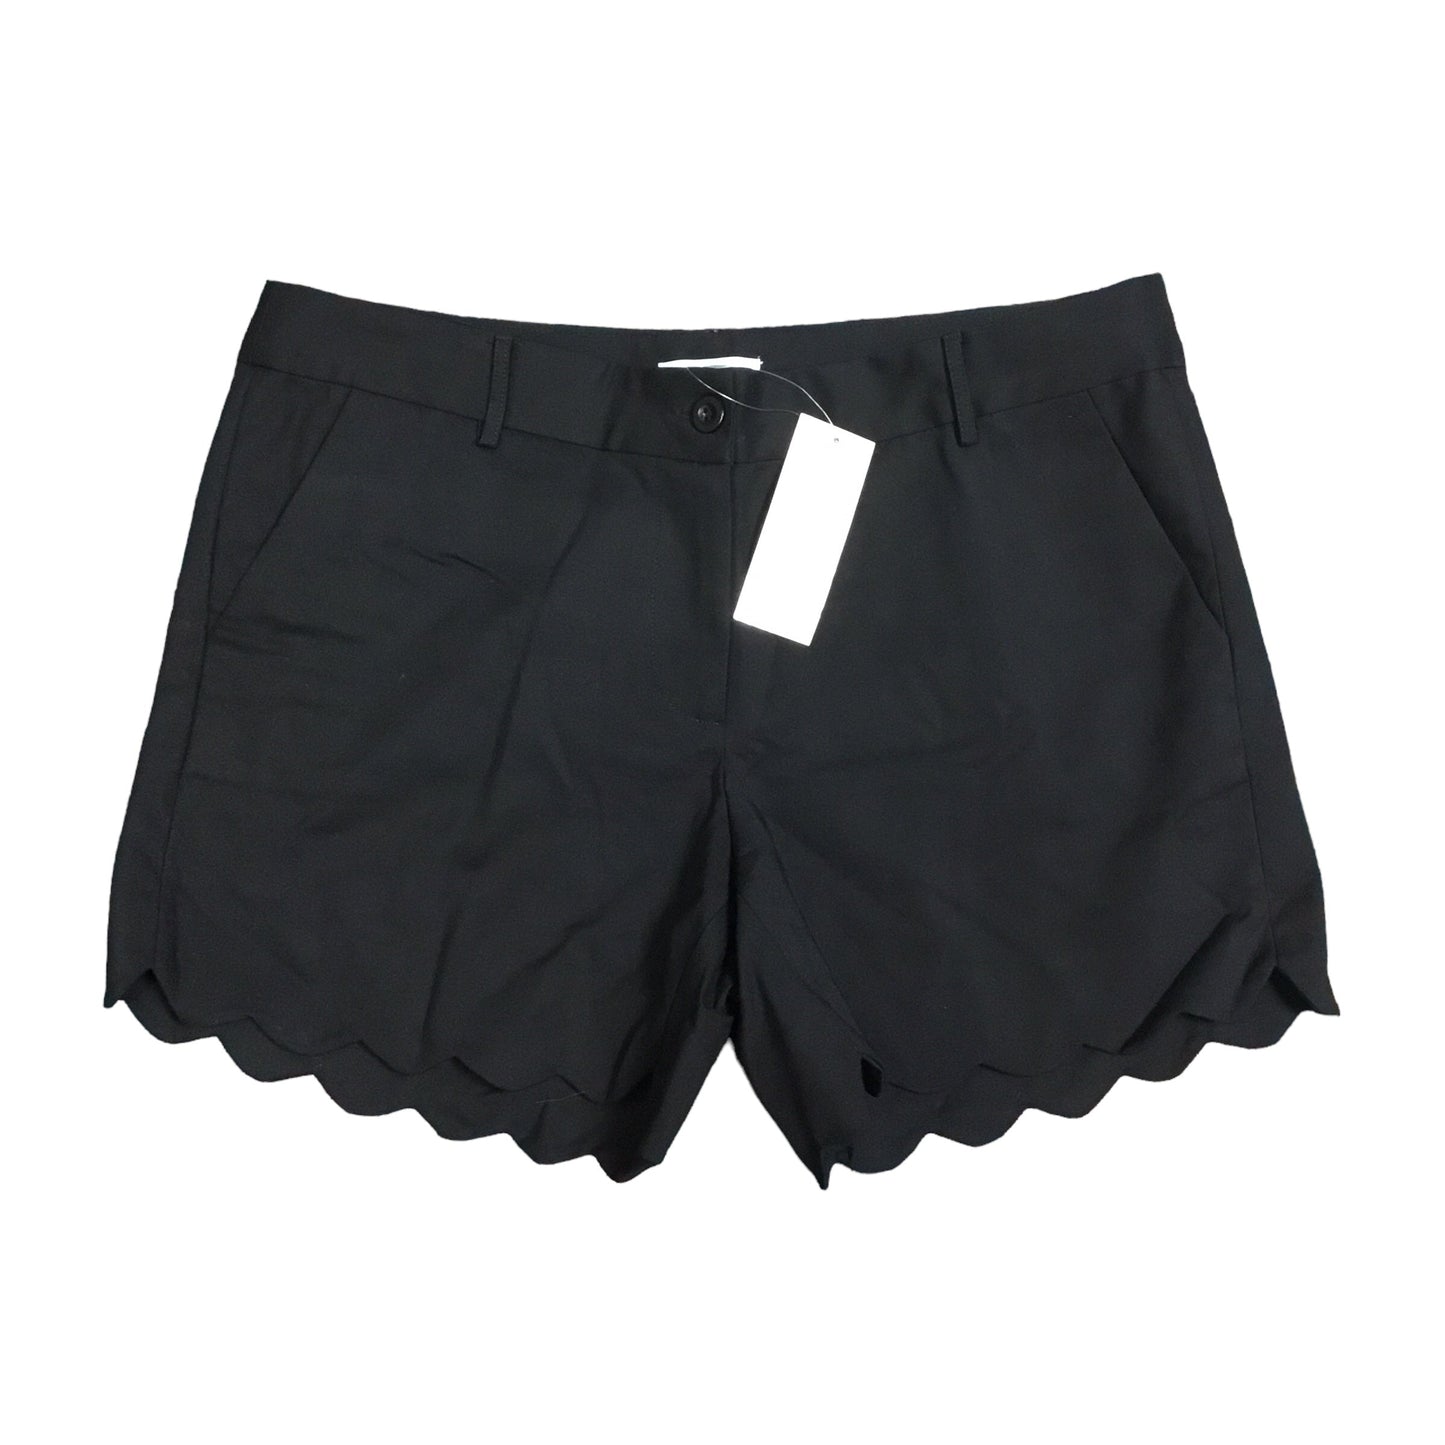 Black Shorts Jade, Size 10